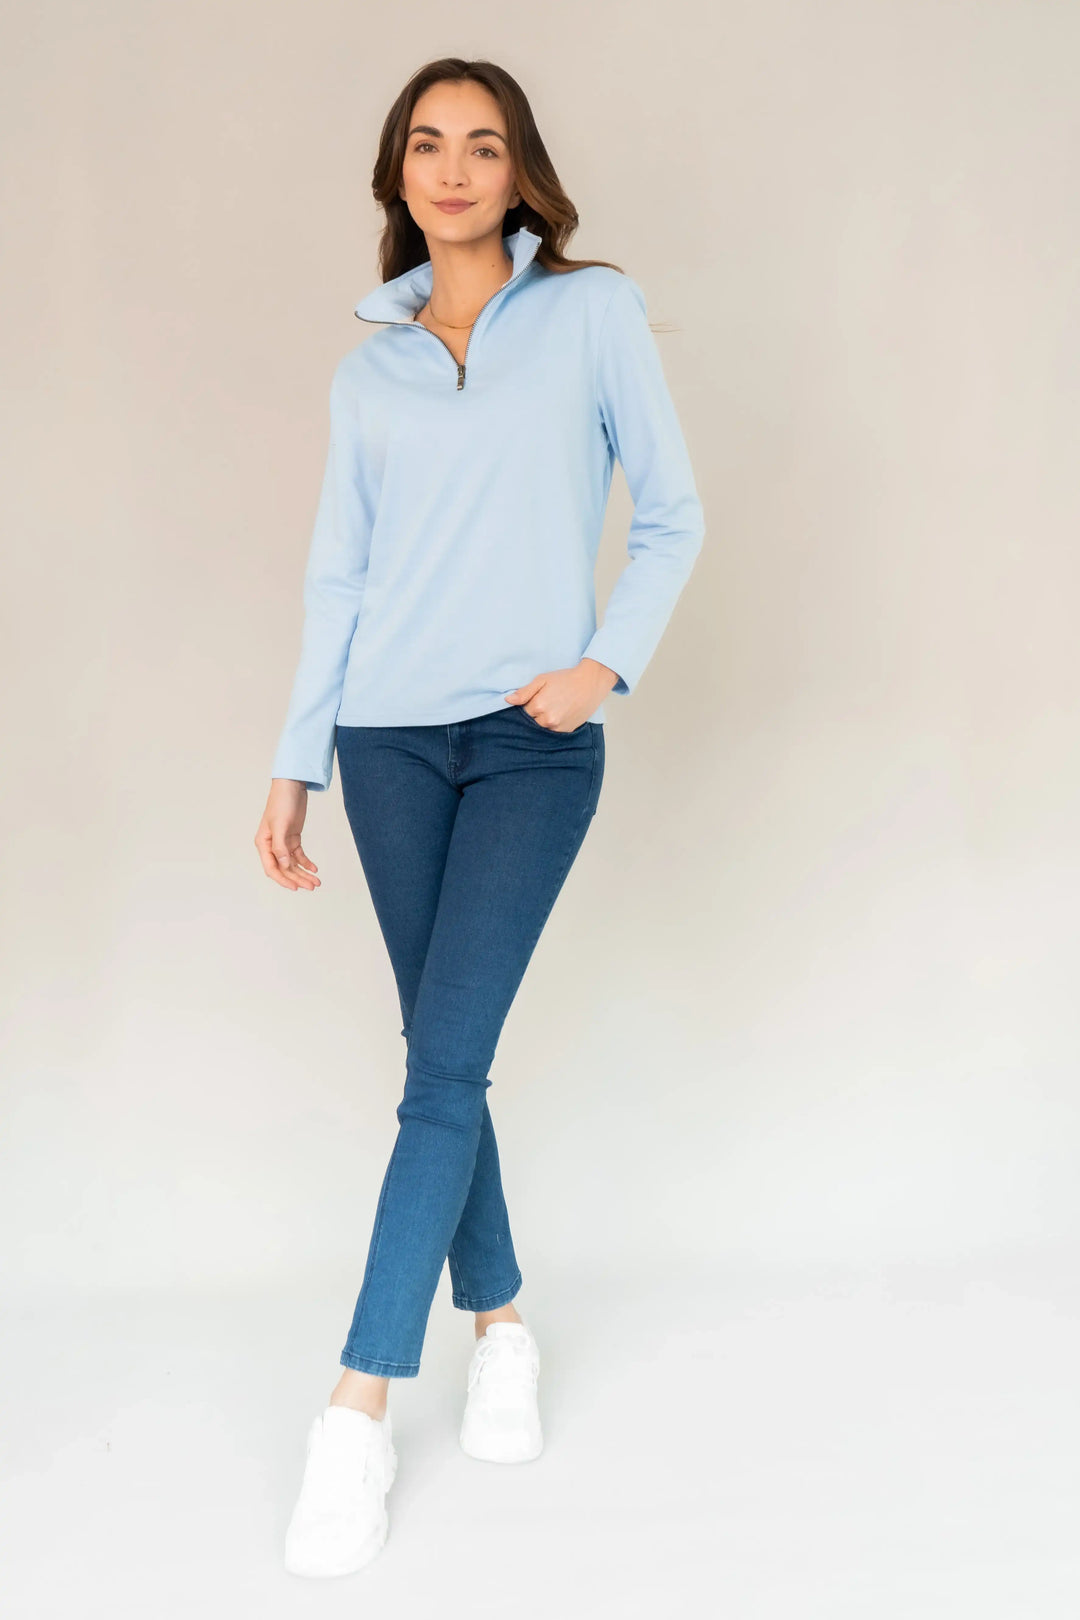 Suéter Halfzip Comfy Mujer Azul claro